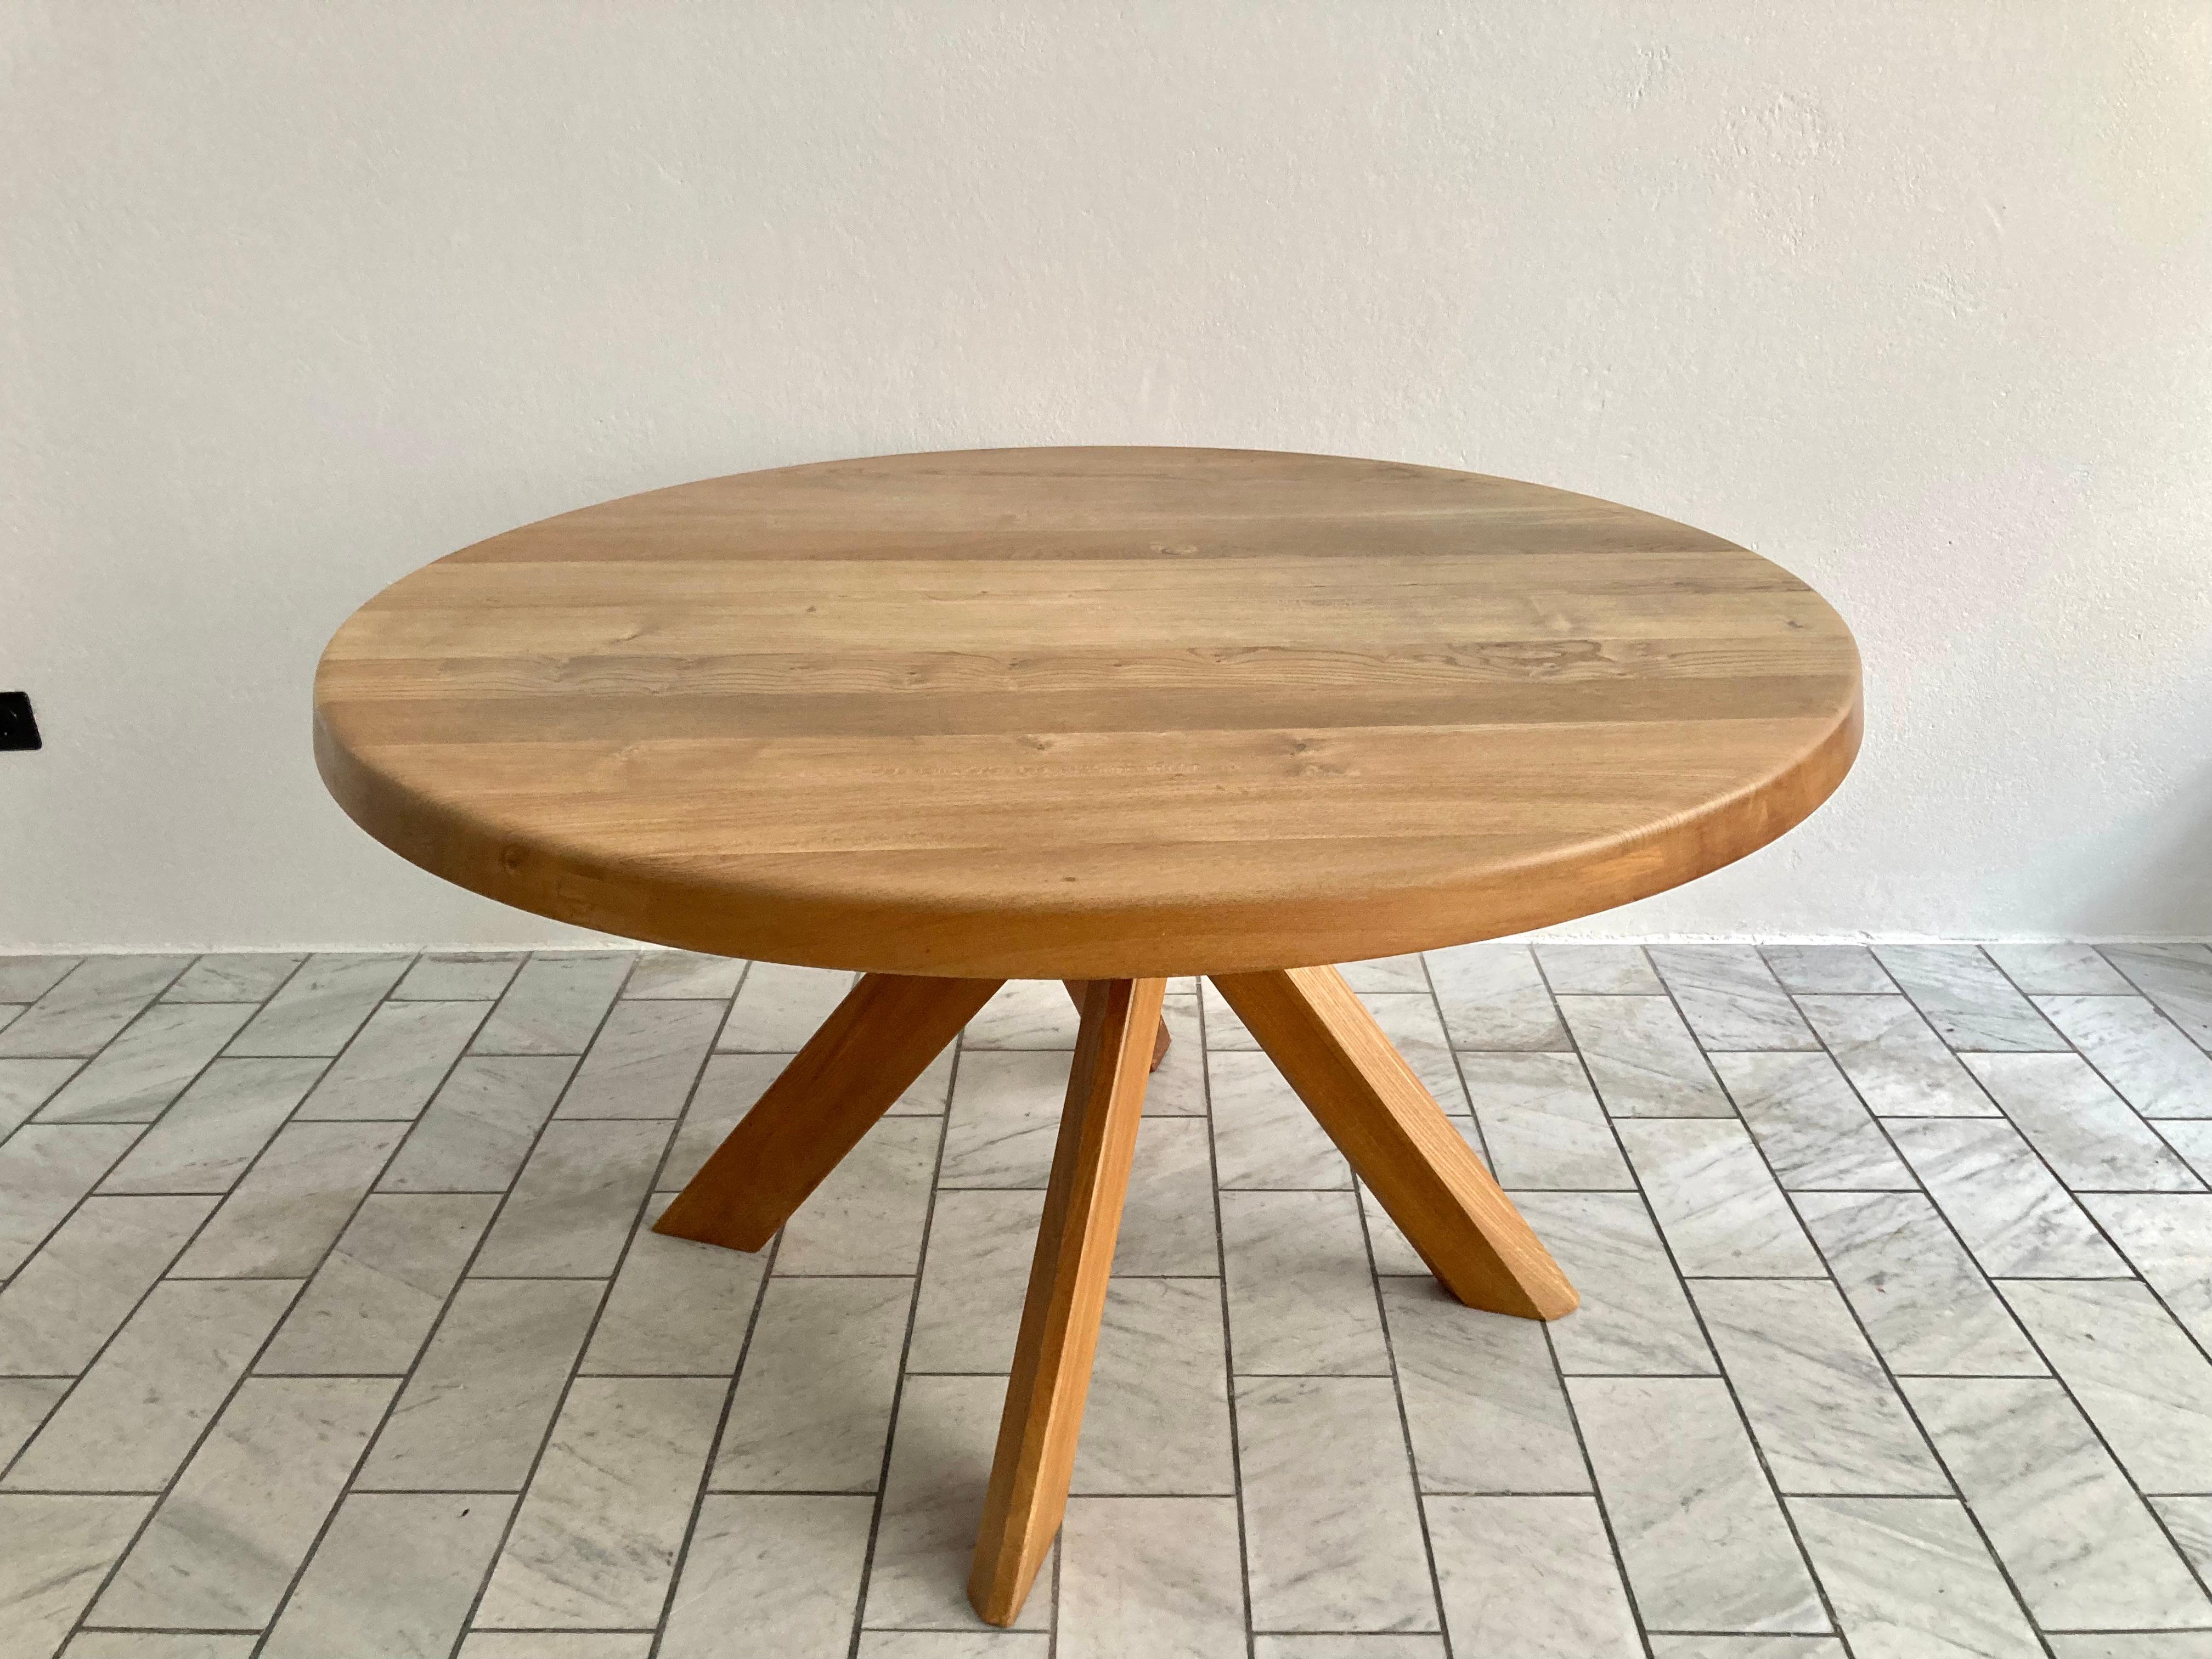 Le modèle T 21 B de Pierre Chapo est un véritable chef-d'œuvre.
Pierre Chapo a conçu cette table vers 1973.
Les 4 pieds sont démontables et verrouillés par une seule vis.
Cette table a été fabriquée au milieu des années 80.
Cette version est la